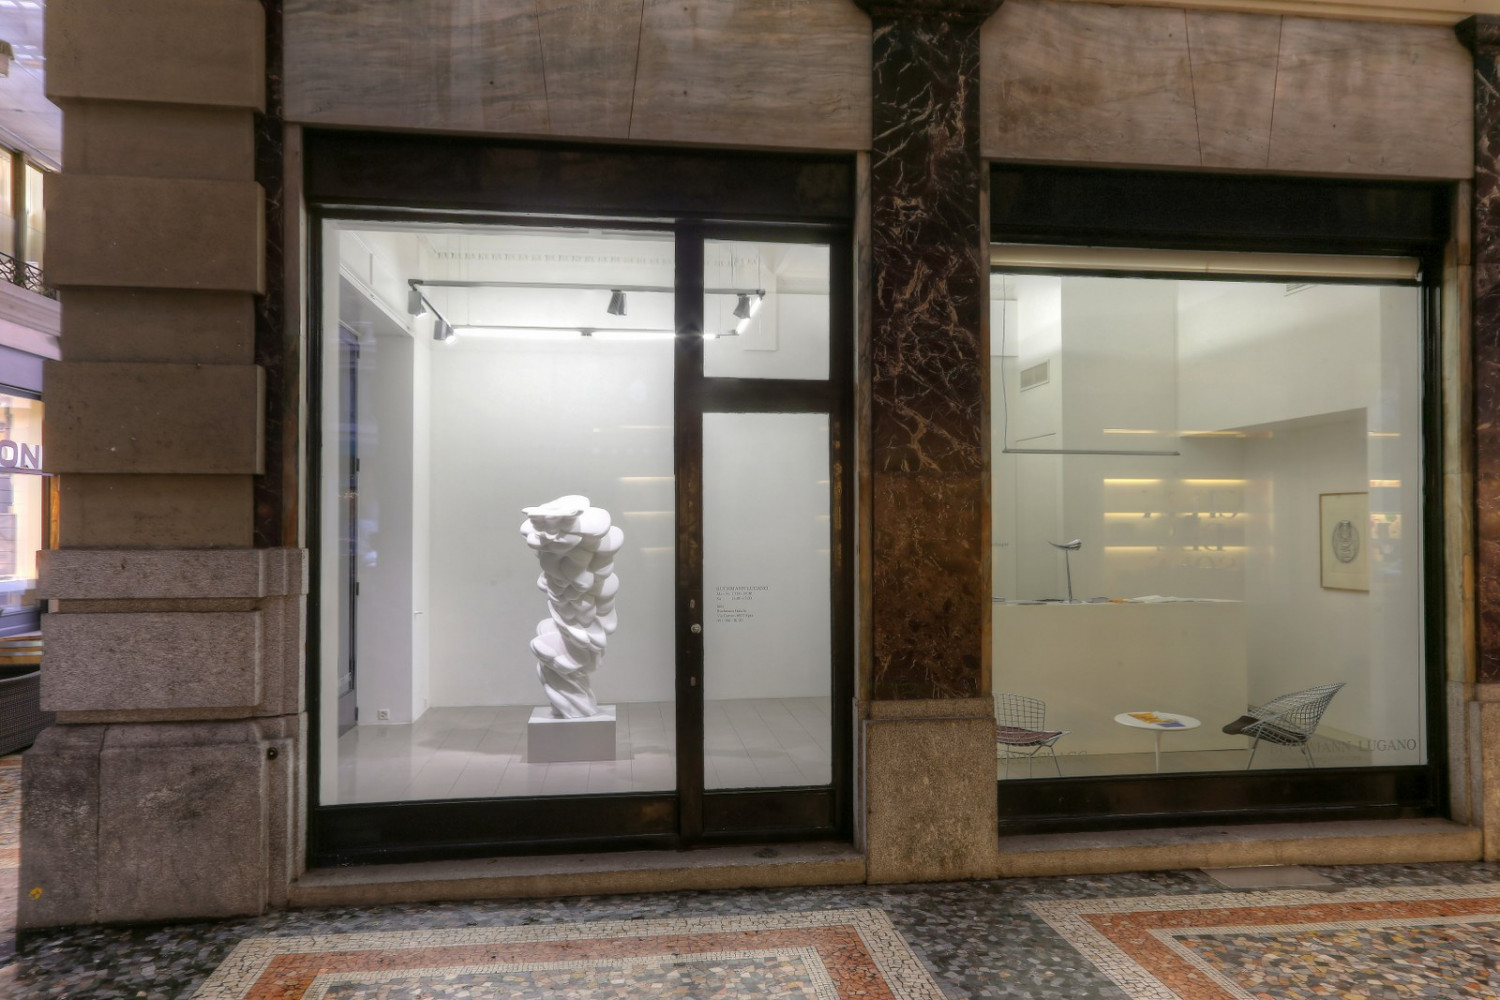 Tony Cragg, ‘Sculture’, Installation view, Buchmann Lugano, 2015